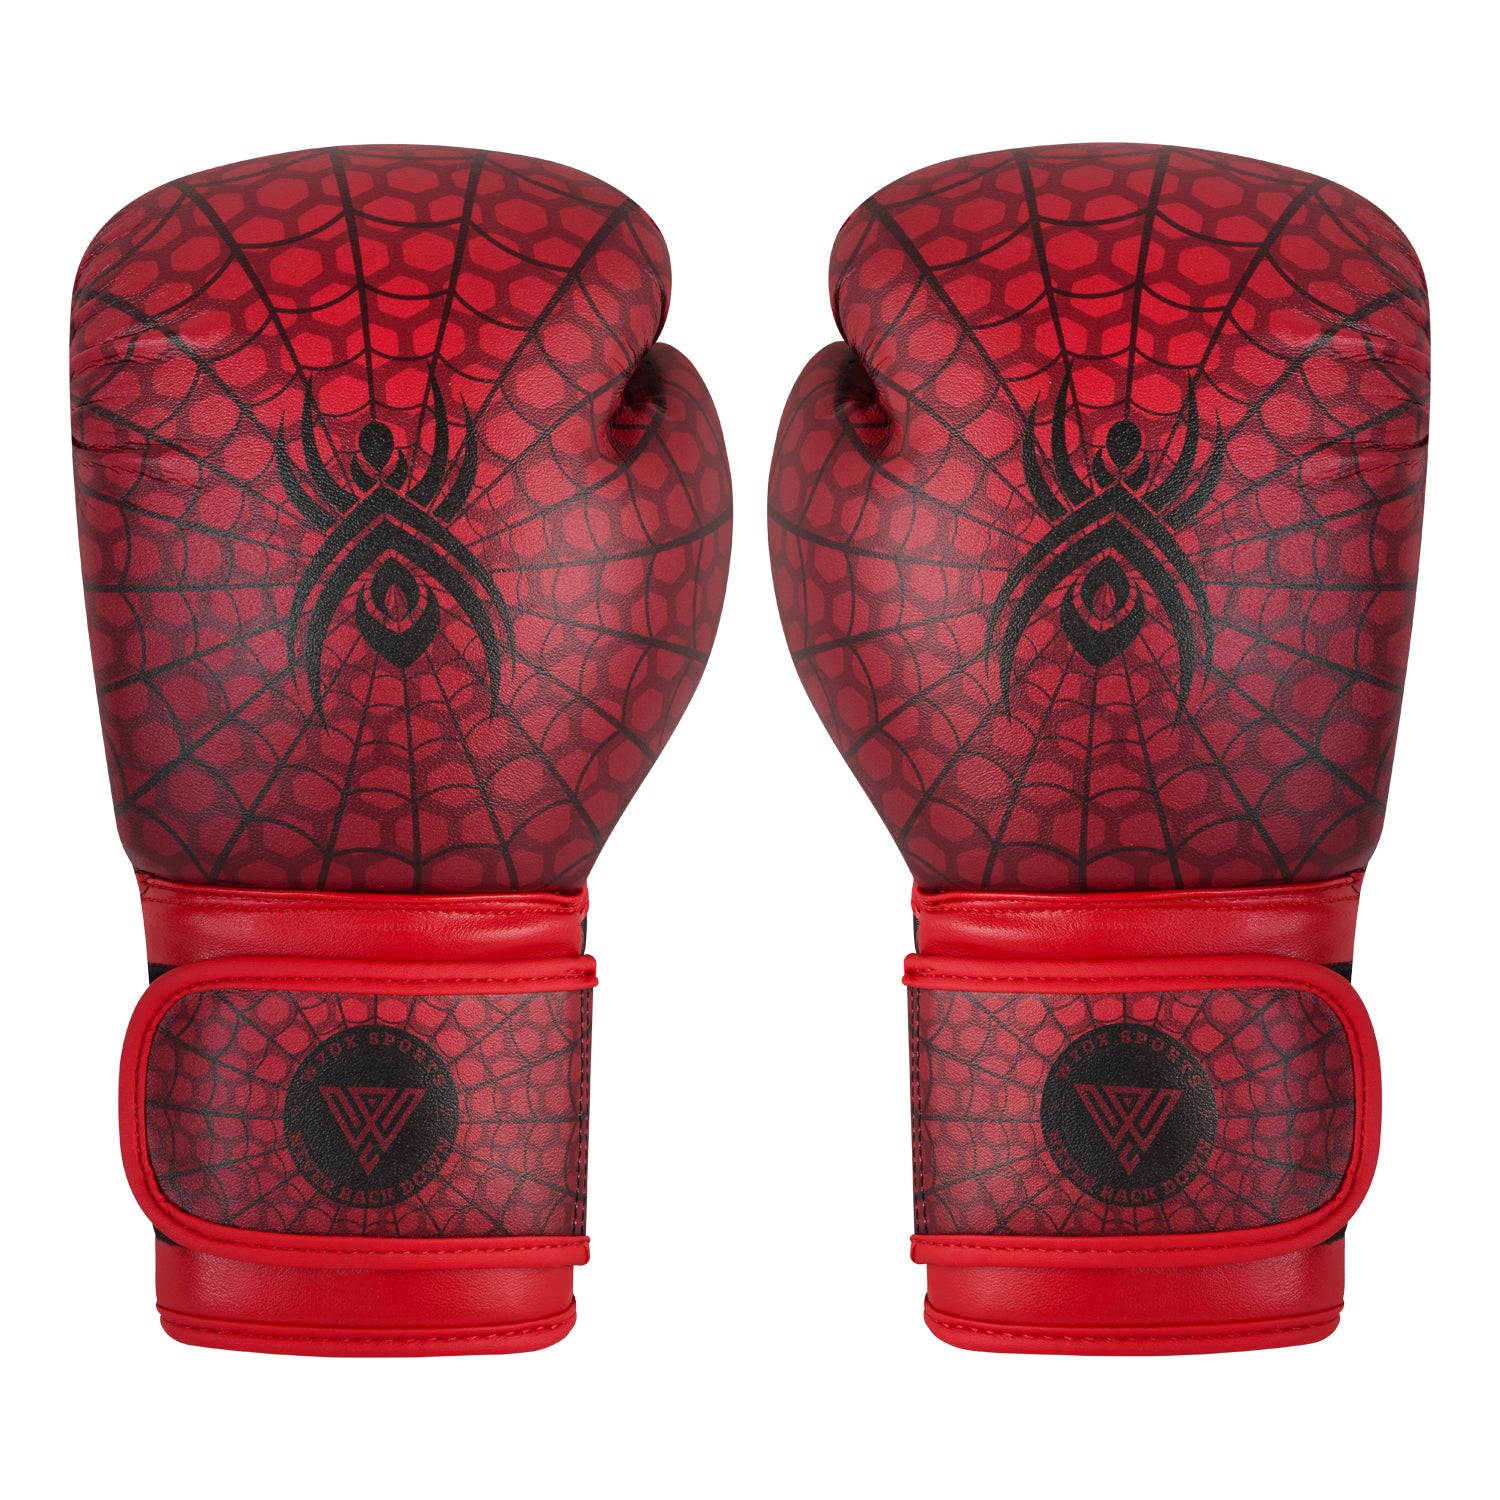 Wyox Kids Spider Boxing Gloves 